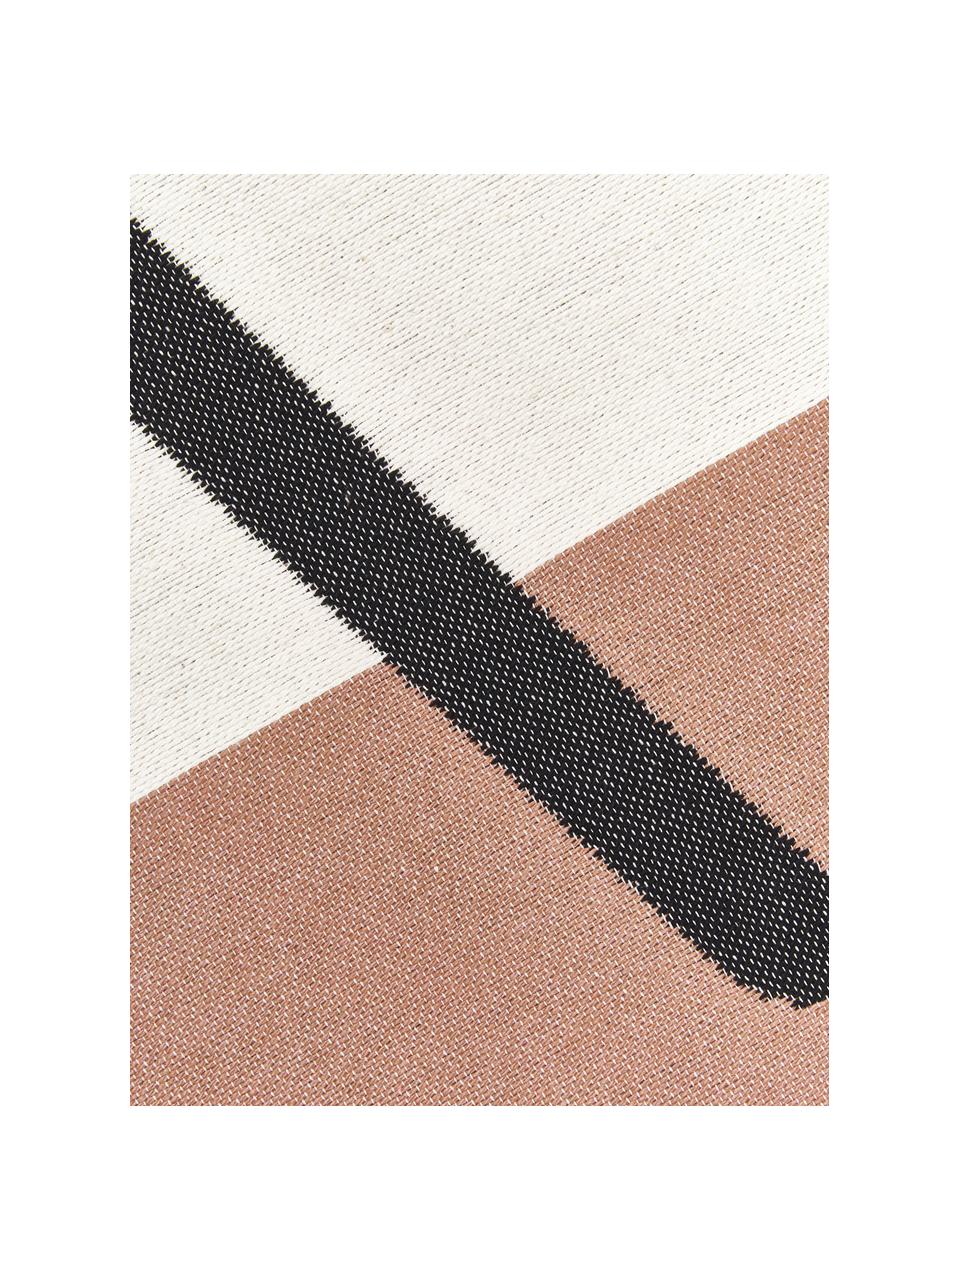 Teppich Goliath Gesicht mit Fransen und geometrischem Muster, 150x200cm, 100% recycelte Baumwolle, Mehrfarbig, B 150 x L 200 cm (Grösse S)